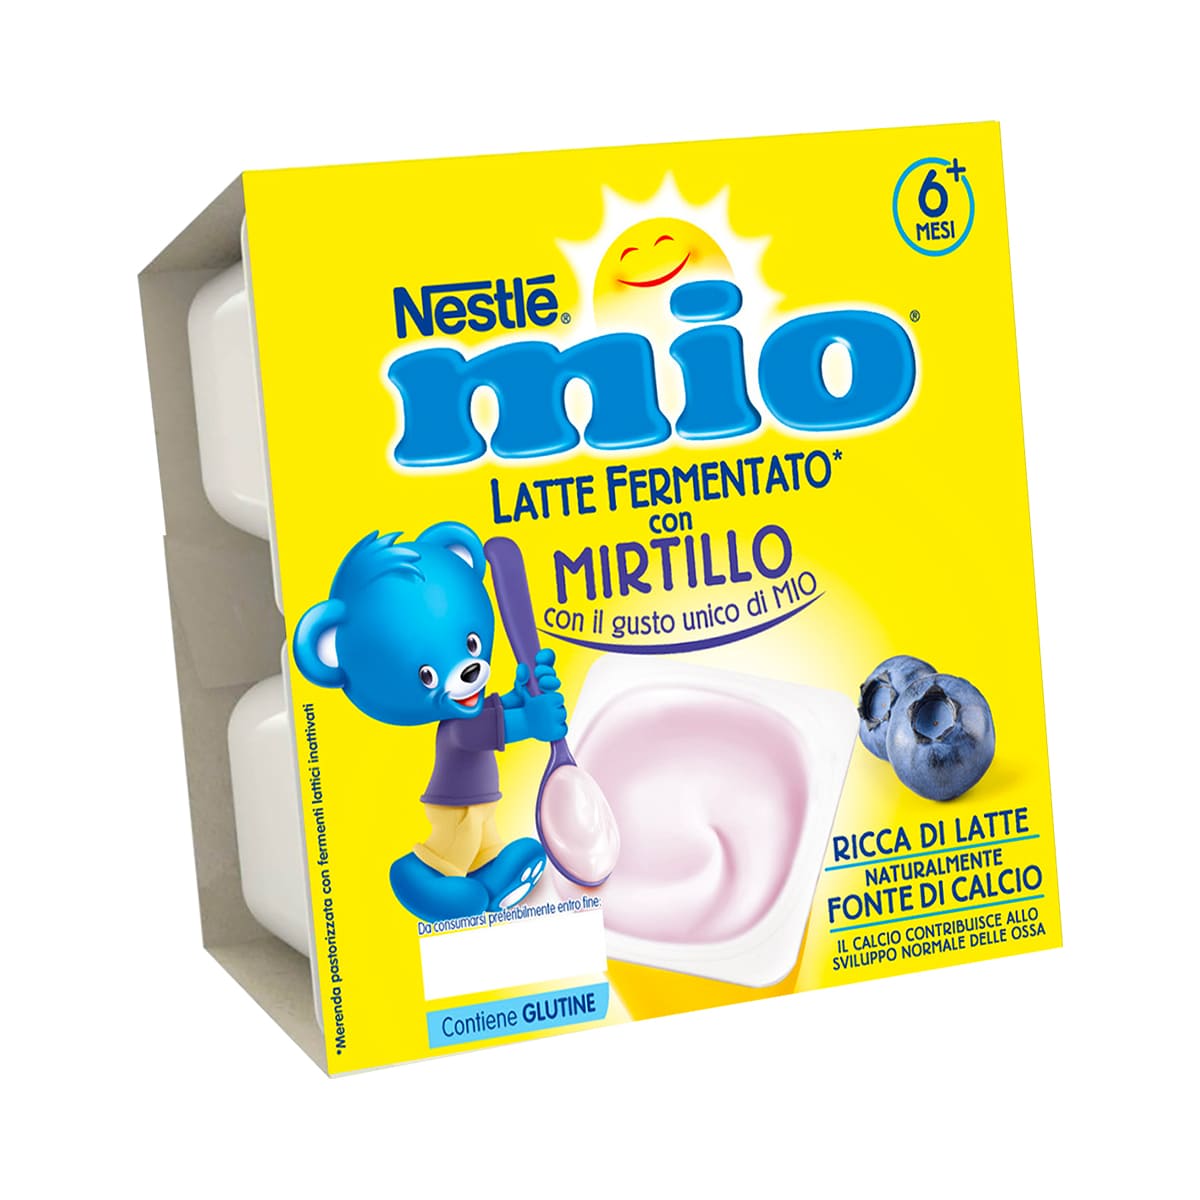 MIO LATTE FERMENTATO MIRTILLO 6(4x100g) IT